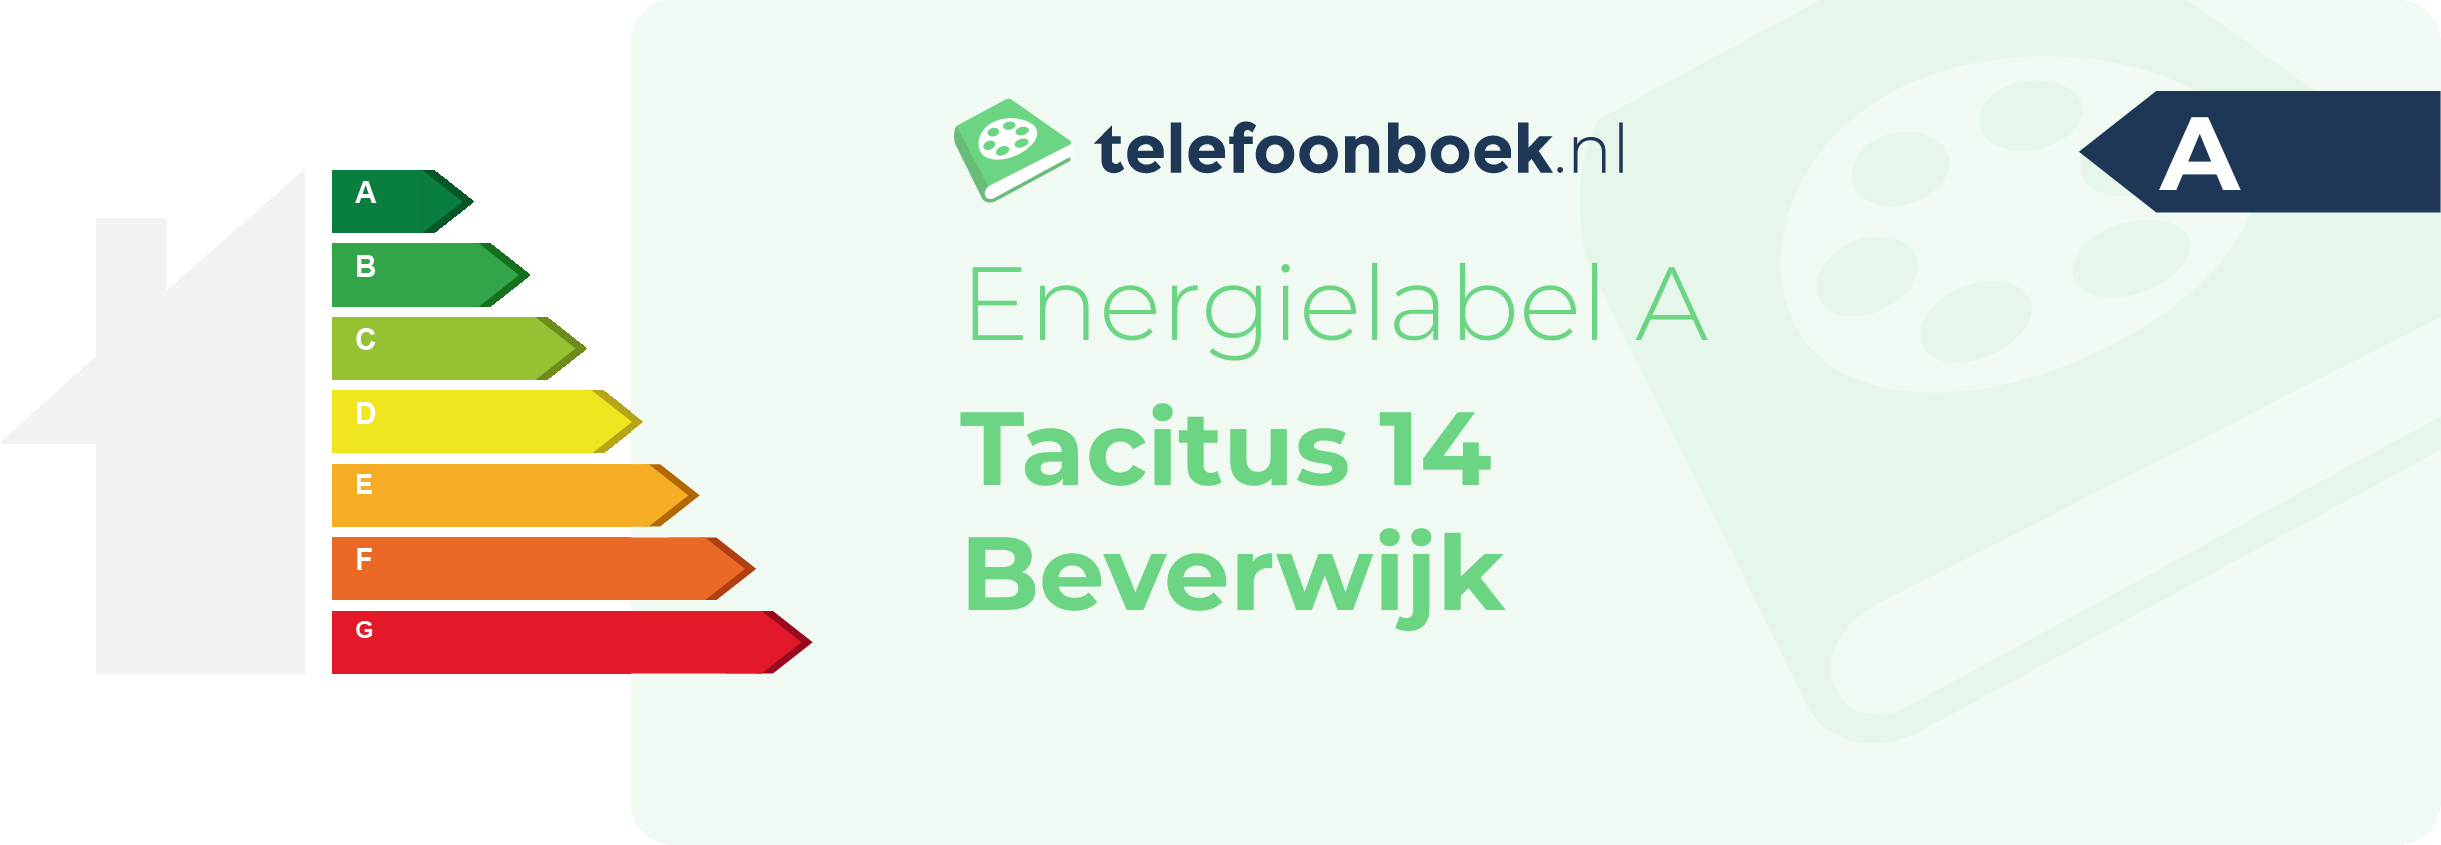 Energielabel Tacitus 14 Beverwijk